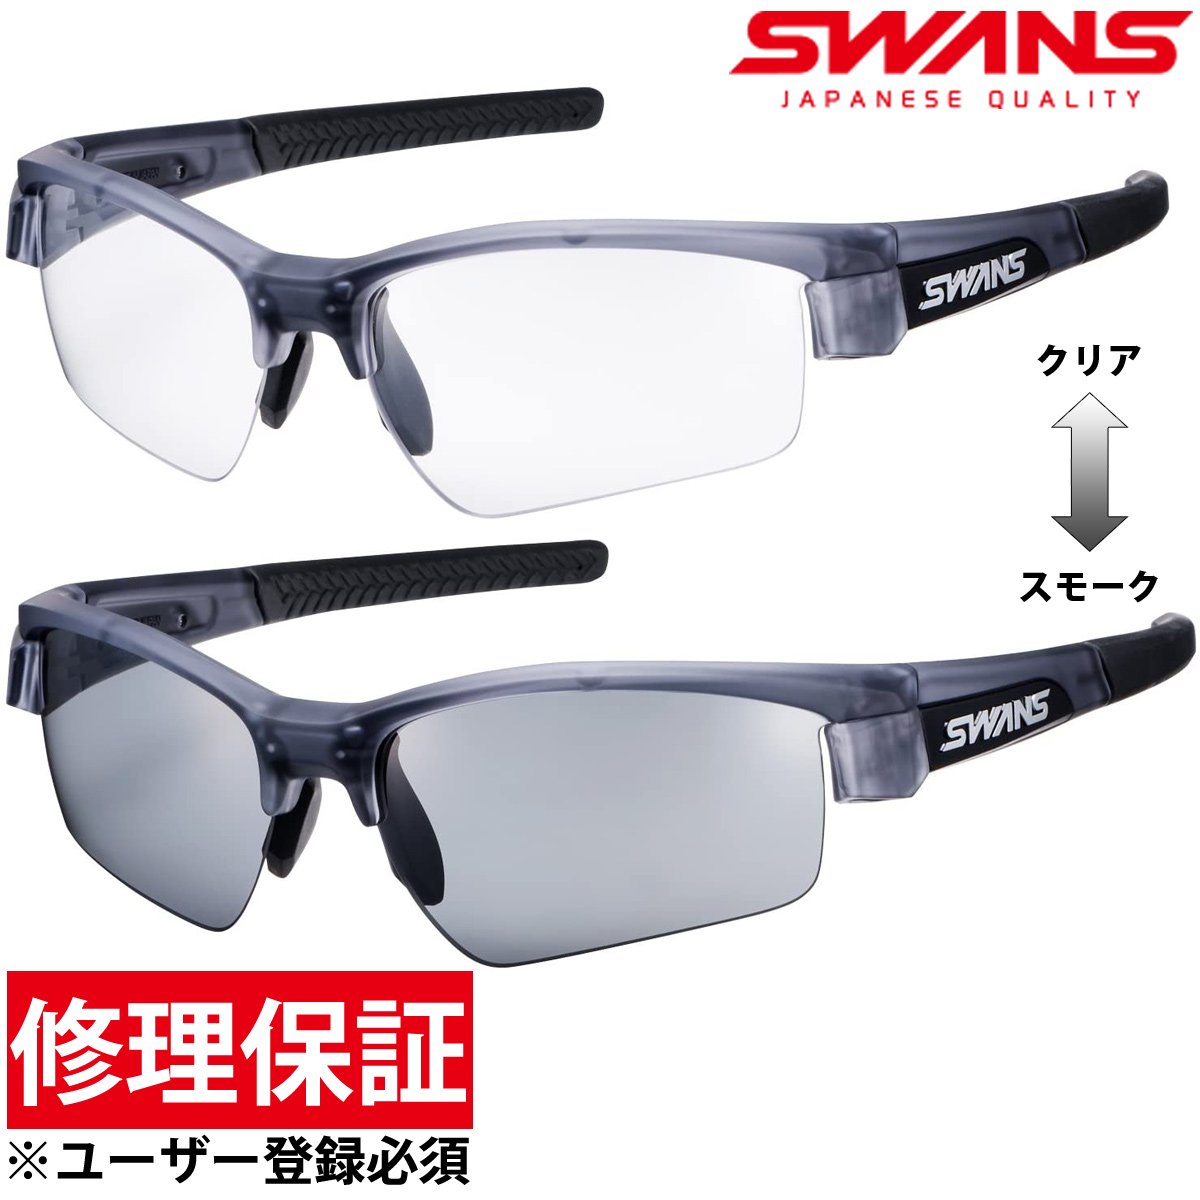 SWANS(スワンズ) スポーツ サングラス ライオンシン ミラーレンズ モデル LI SIN-1701 BK ブラック×ブラック×ブラック